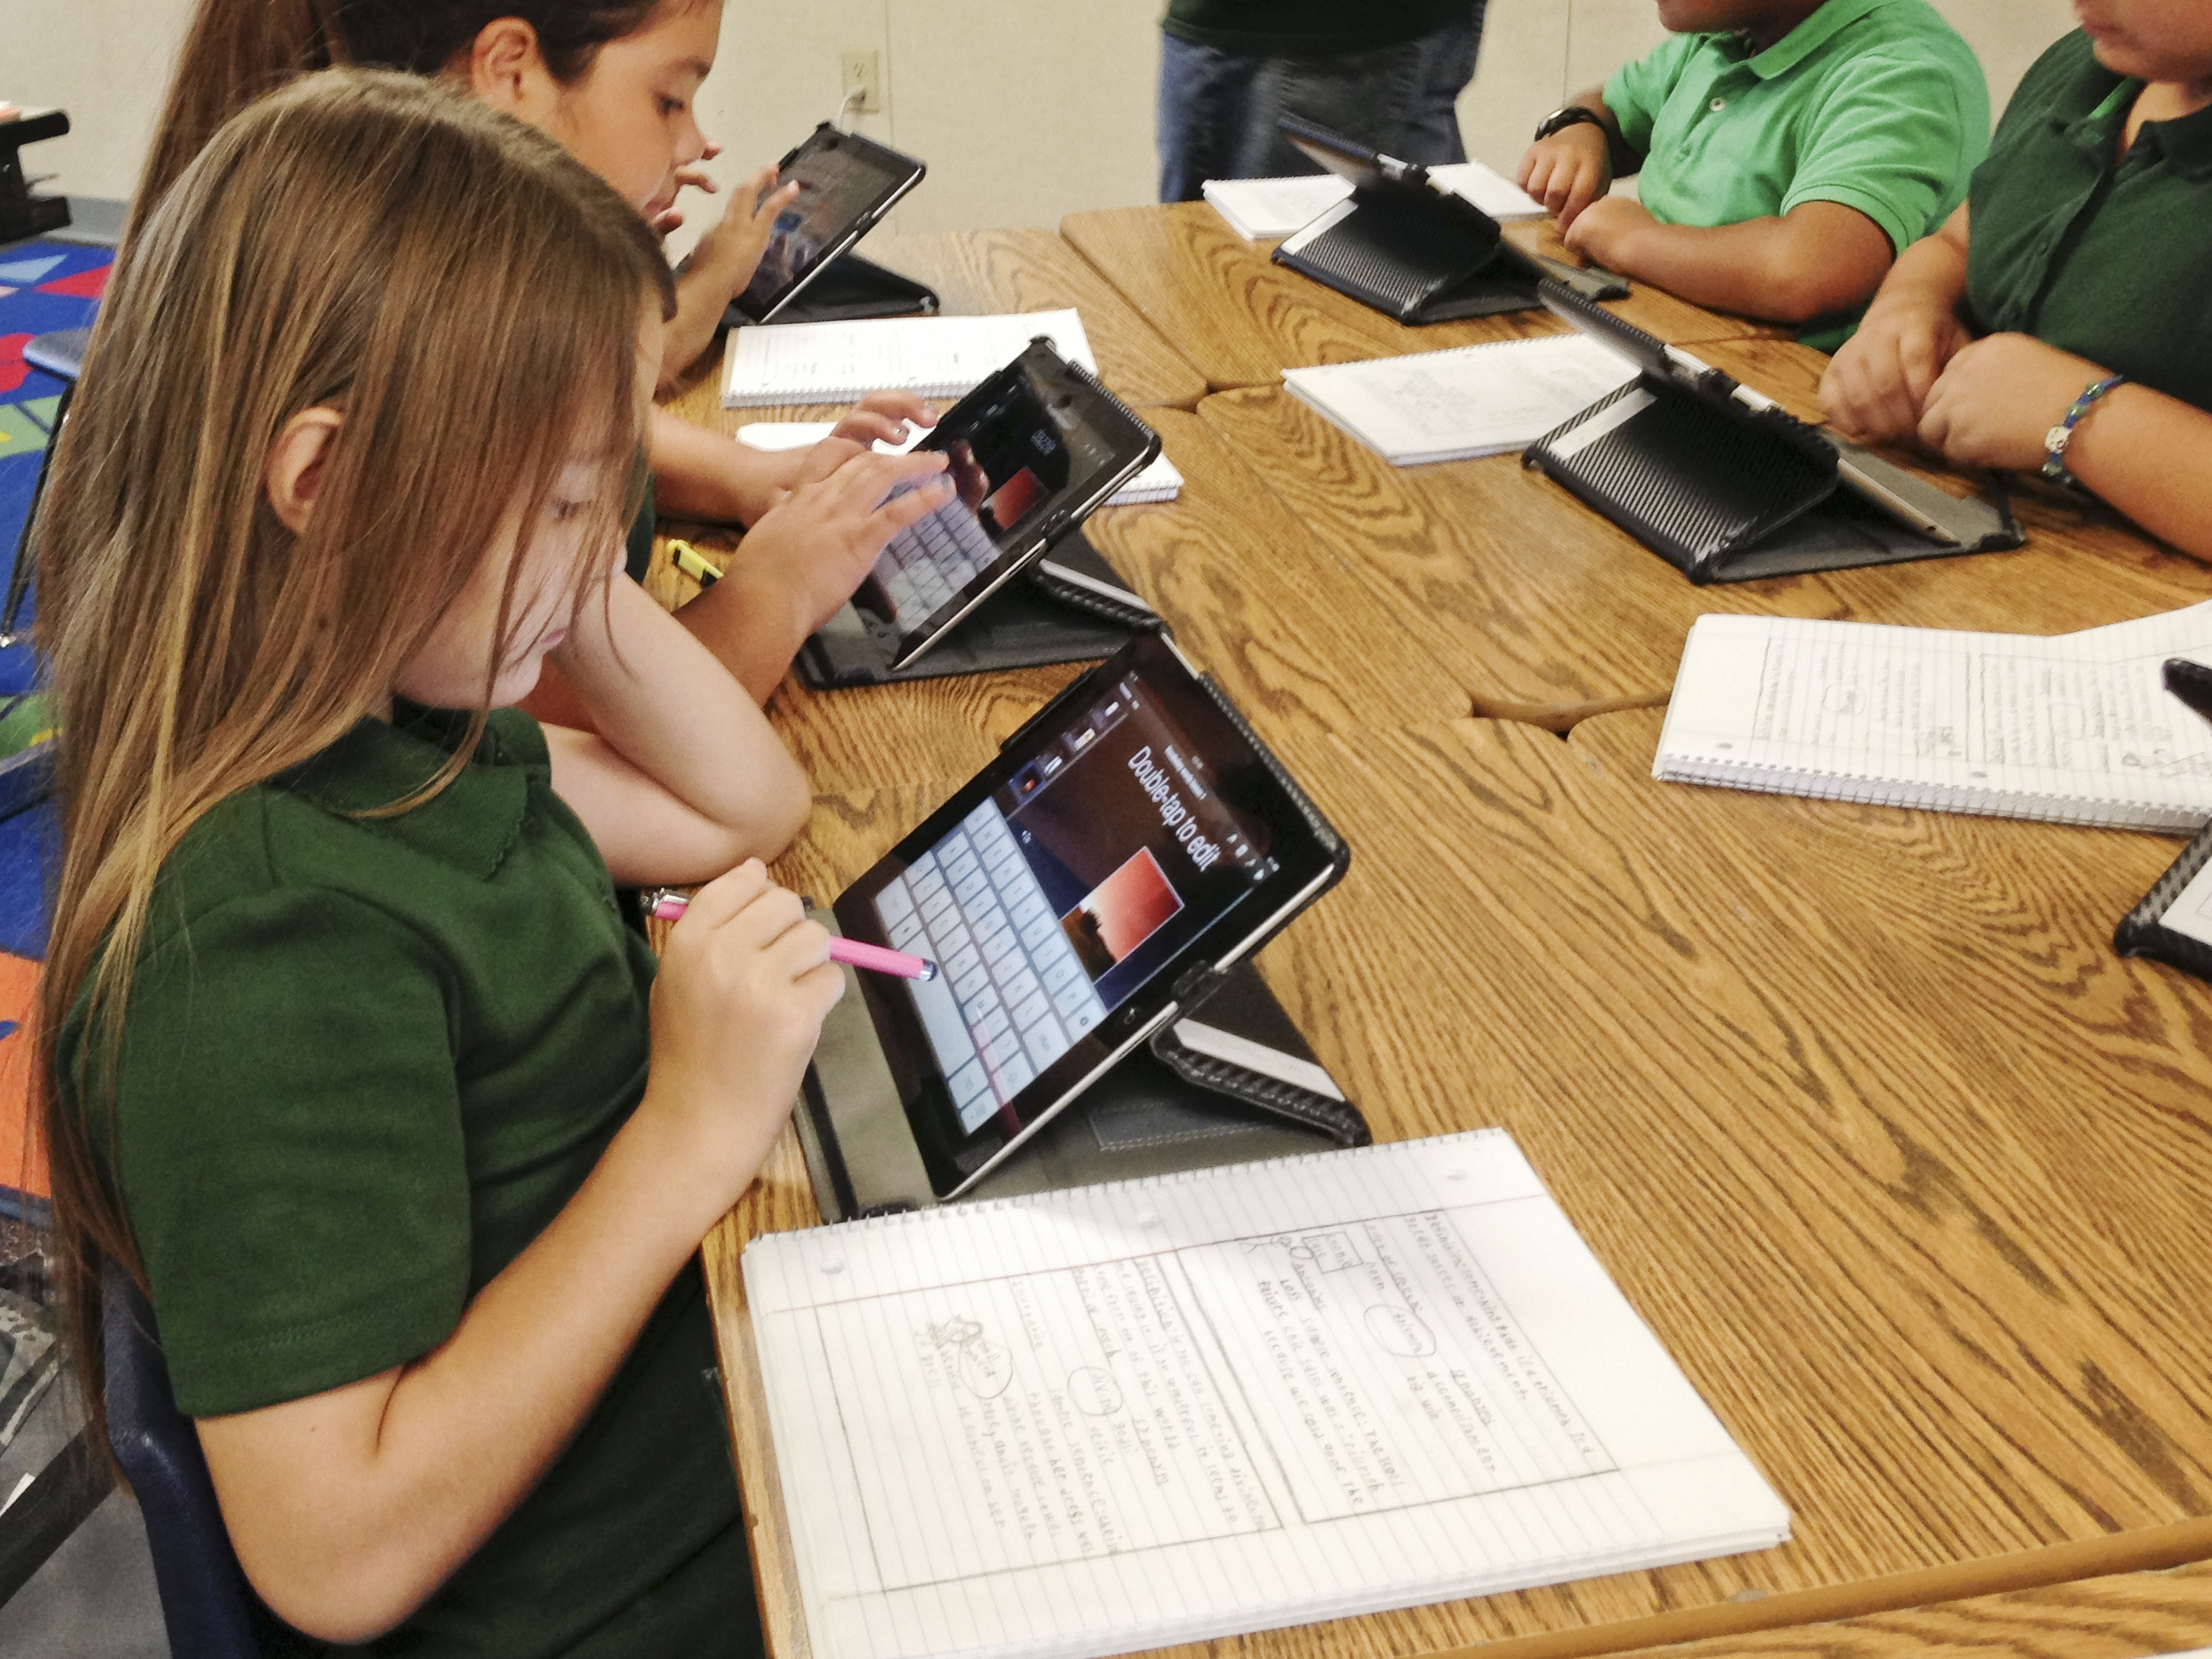  Insegnare e apprendere: usare gli iPad in classe